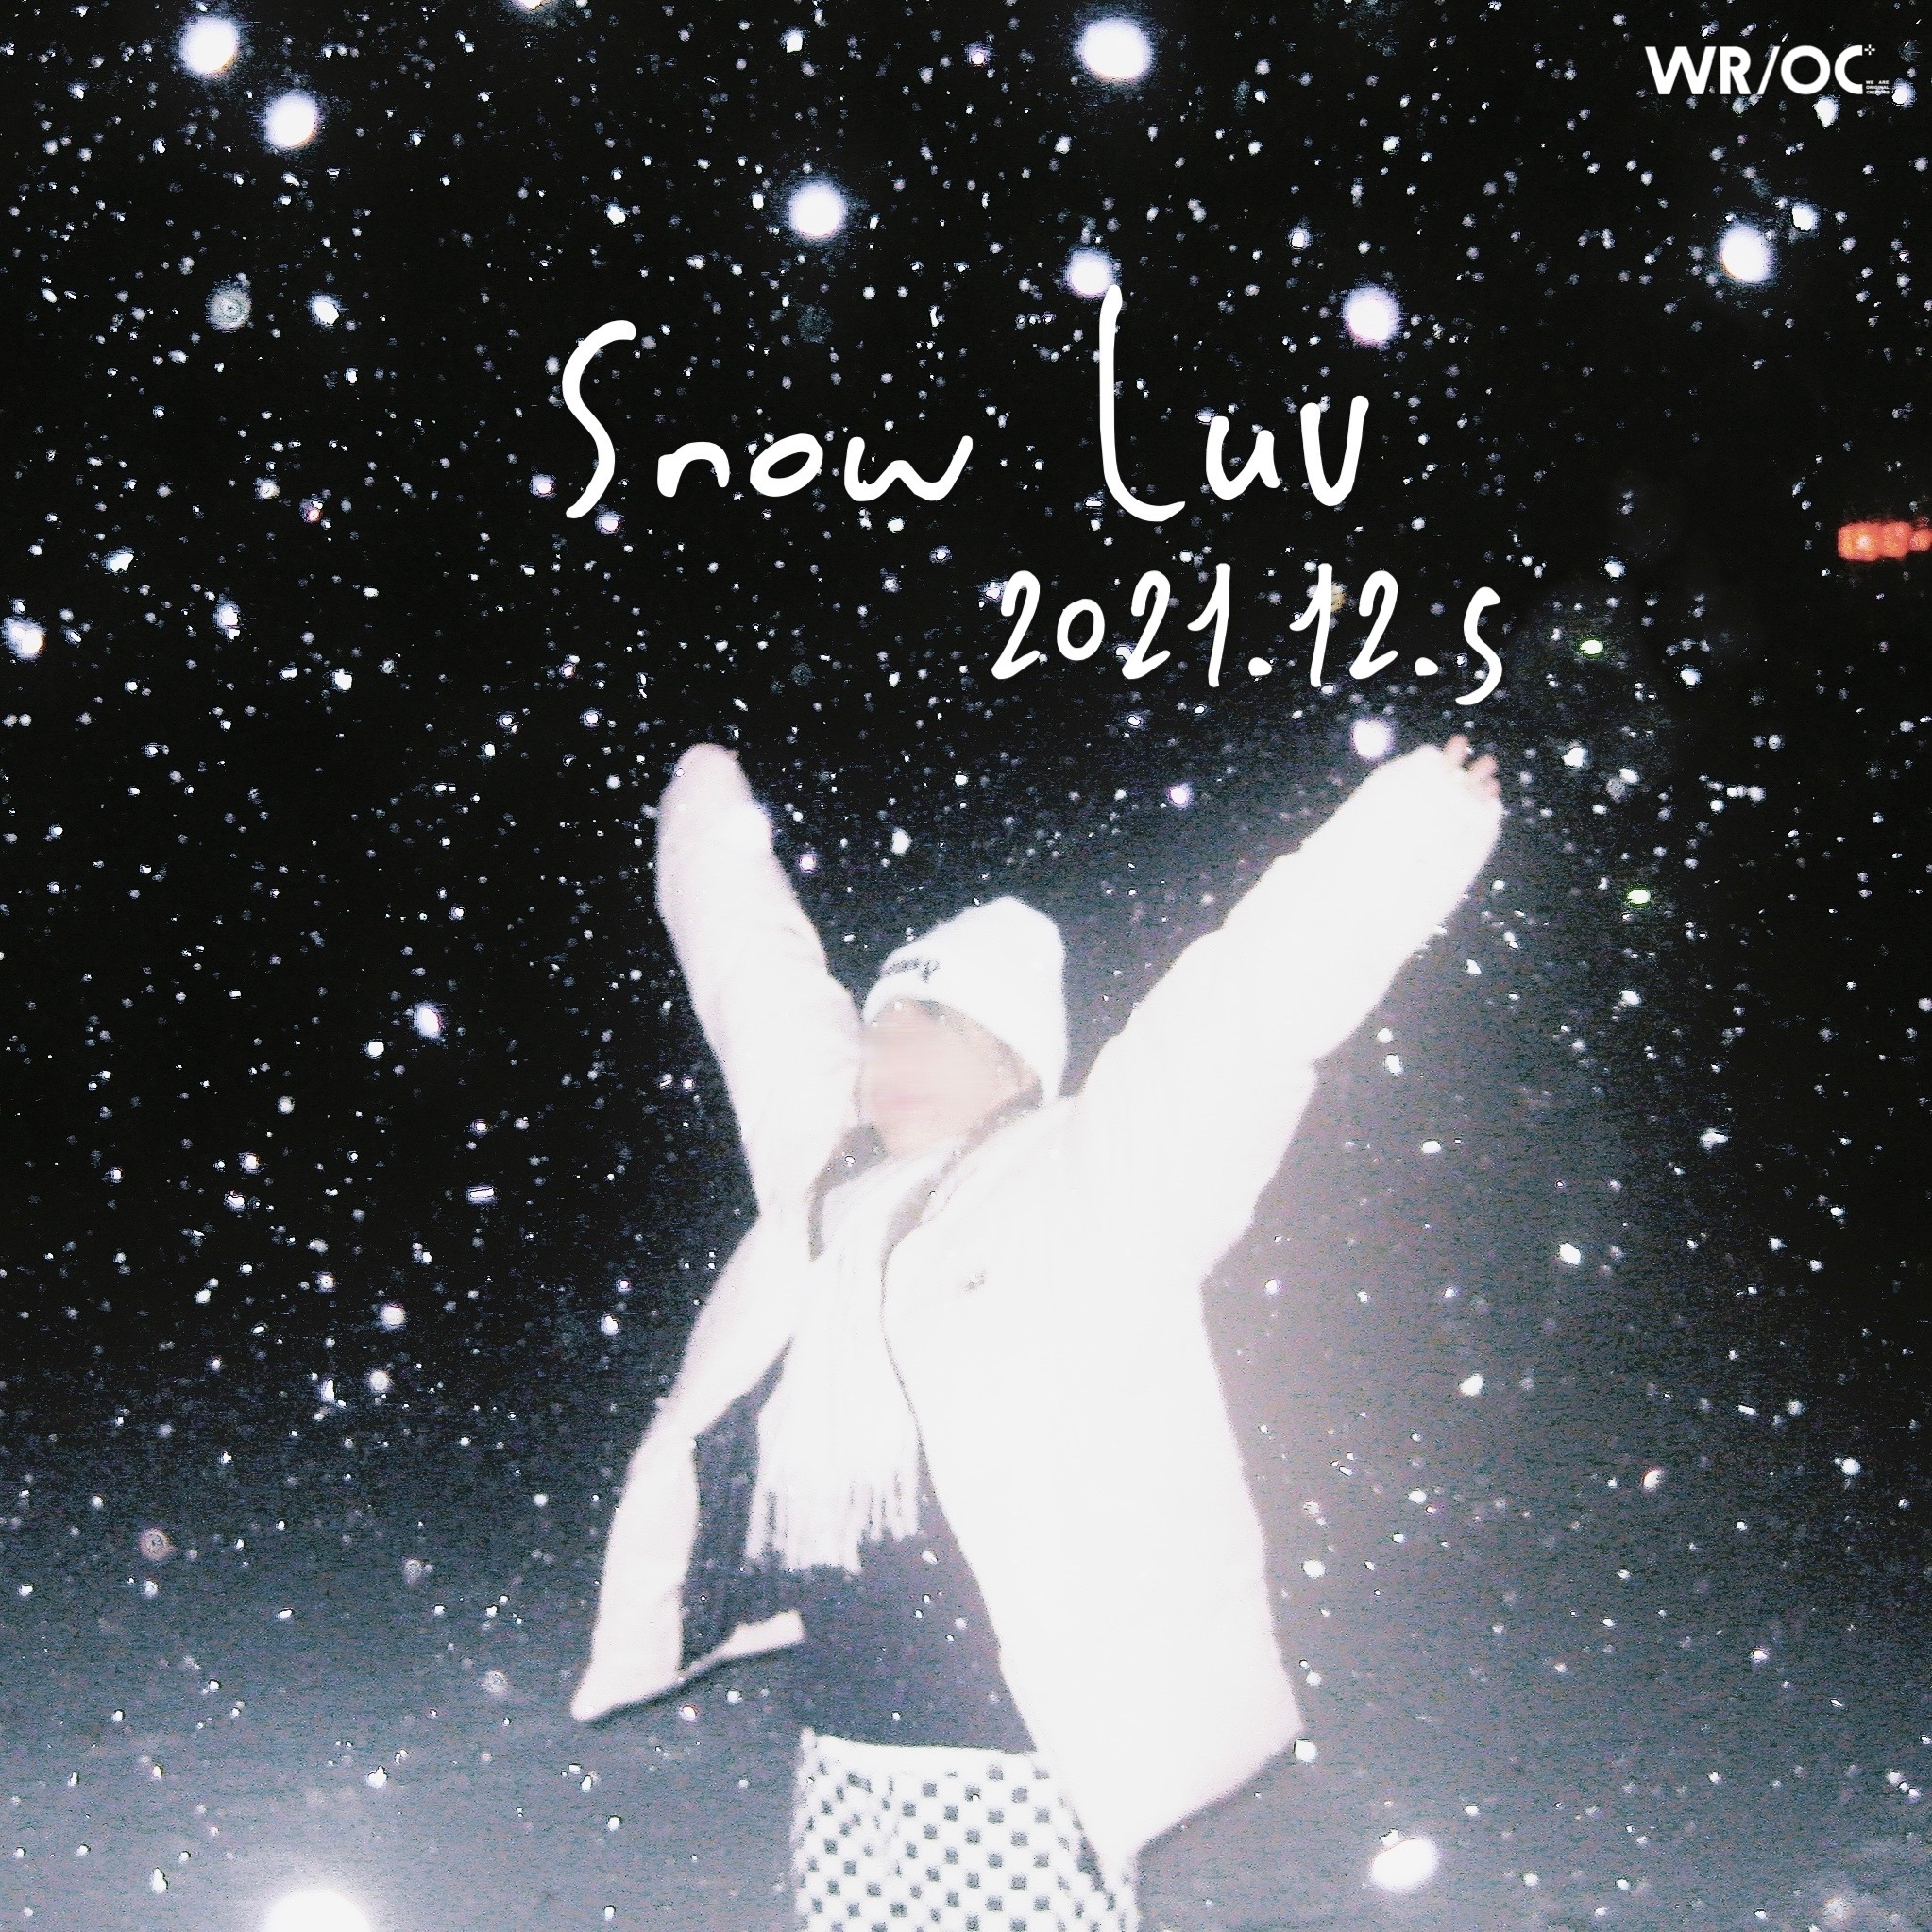 雪·愛歌词 歌手GS.L / AaronGwin / WR/OC-专辑雪·愛-单曲《雪·愛》LRC歌词下载